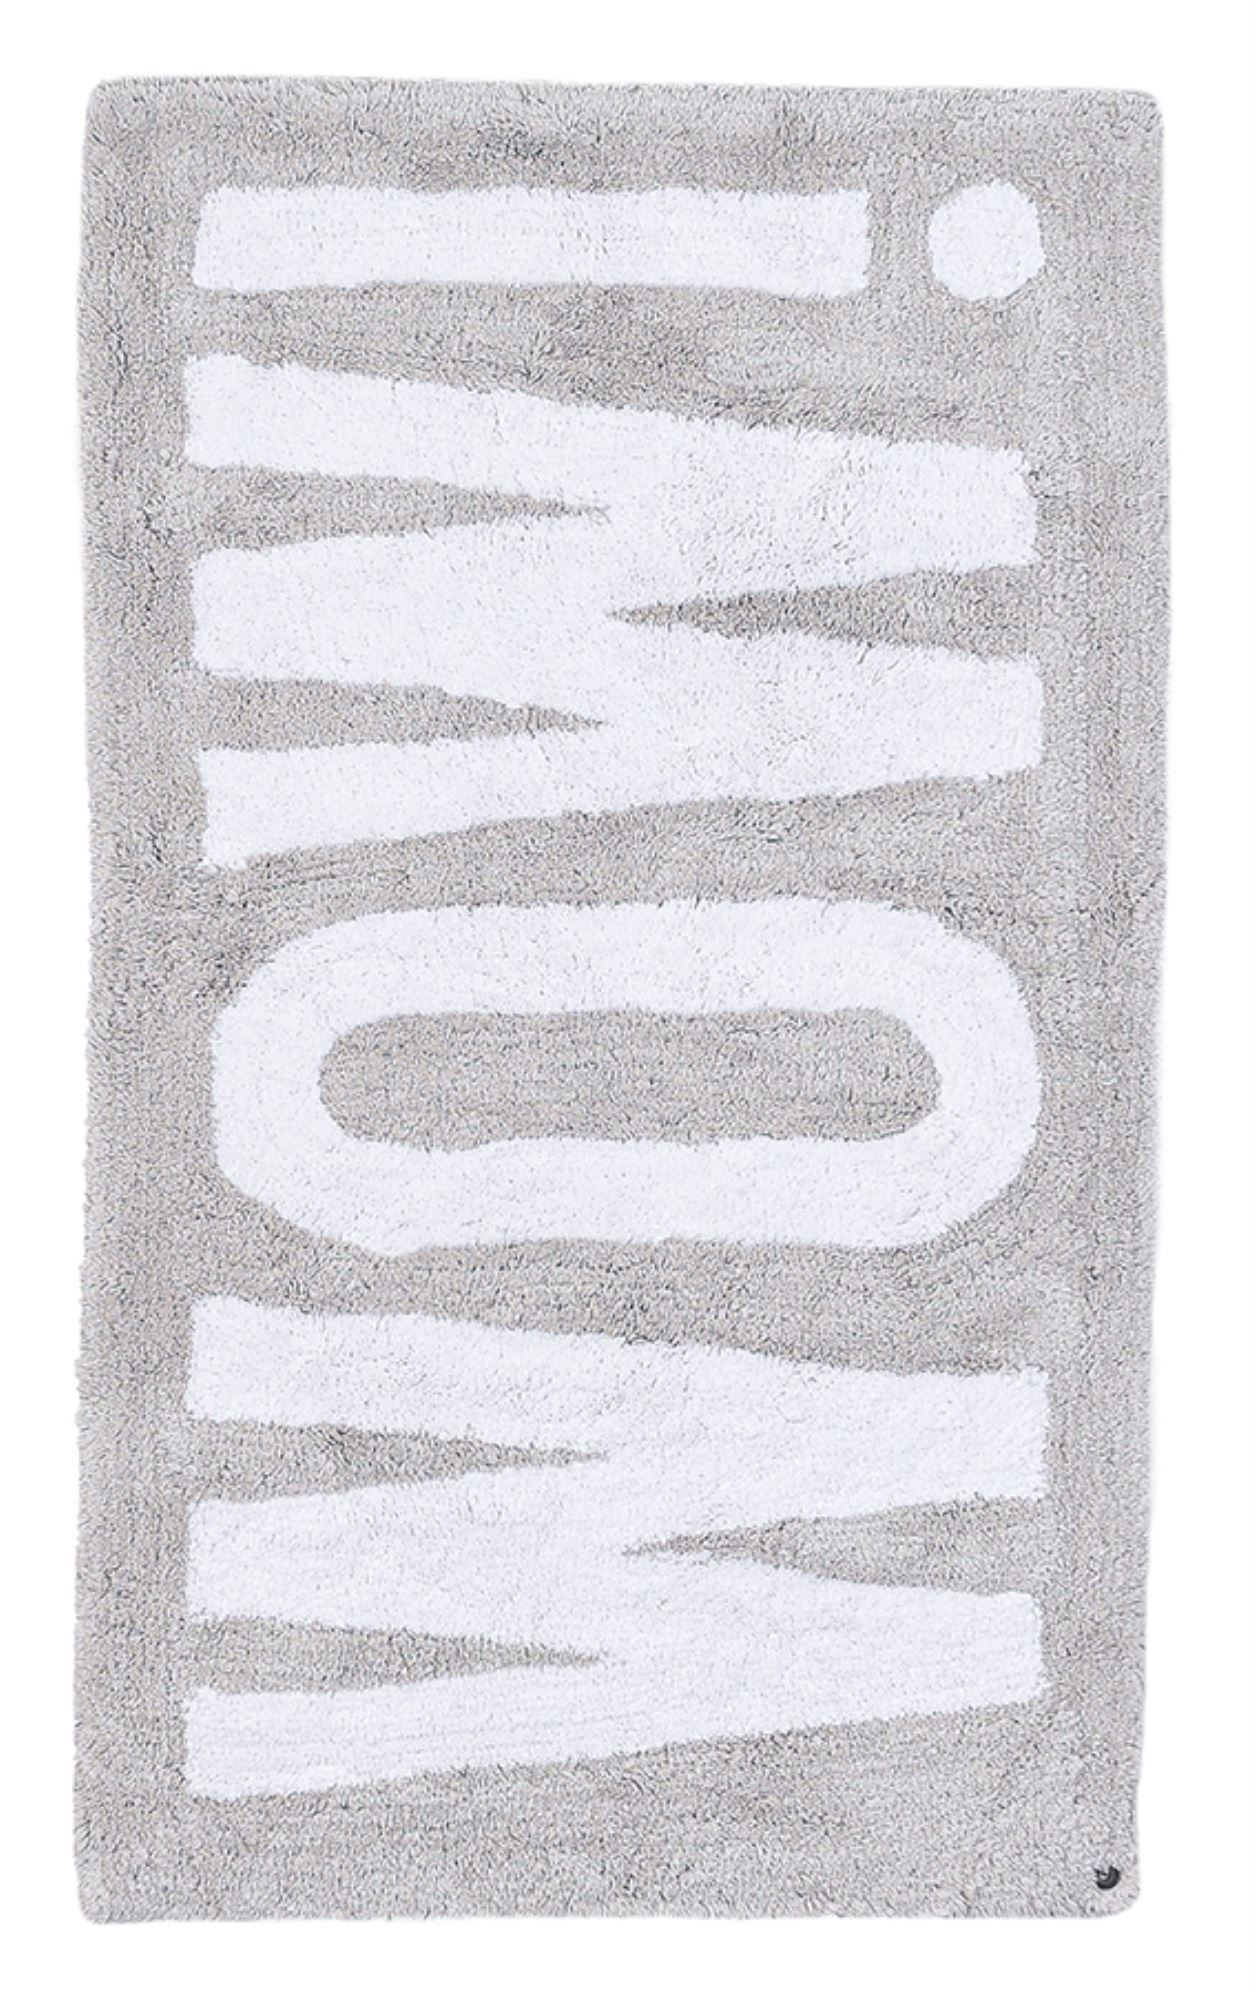 tapis de bain en coton tufté à la main - argent 70x120 cm